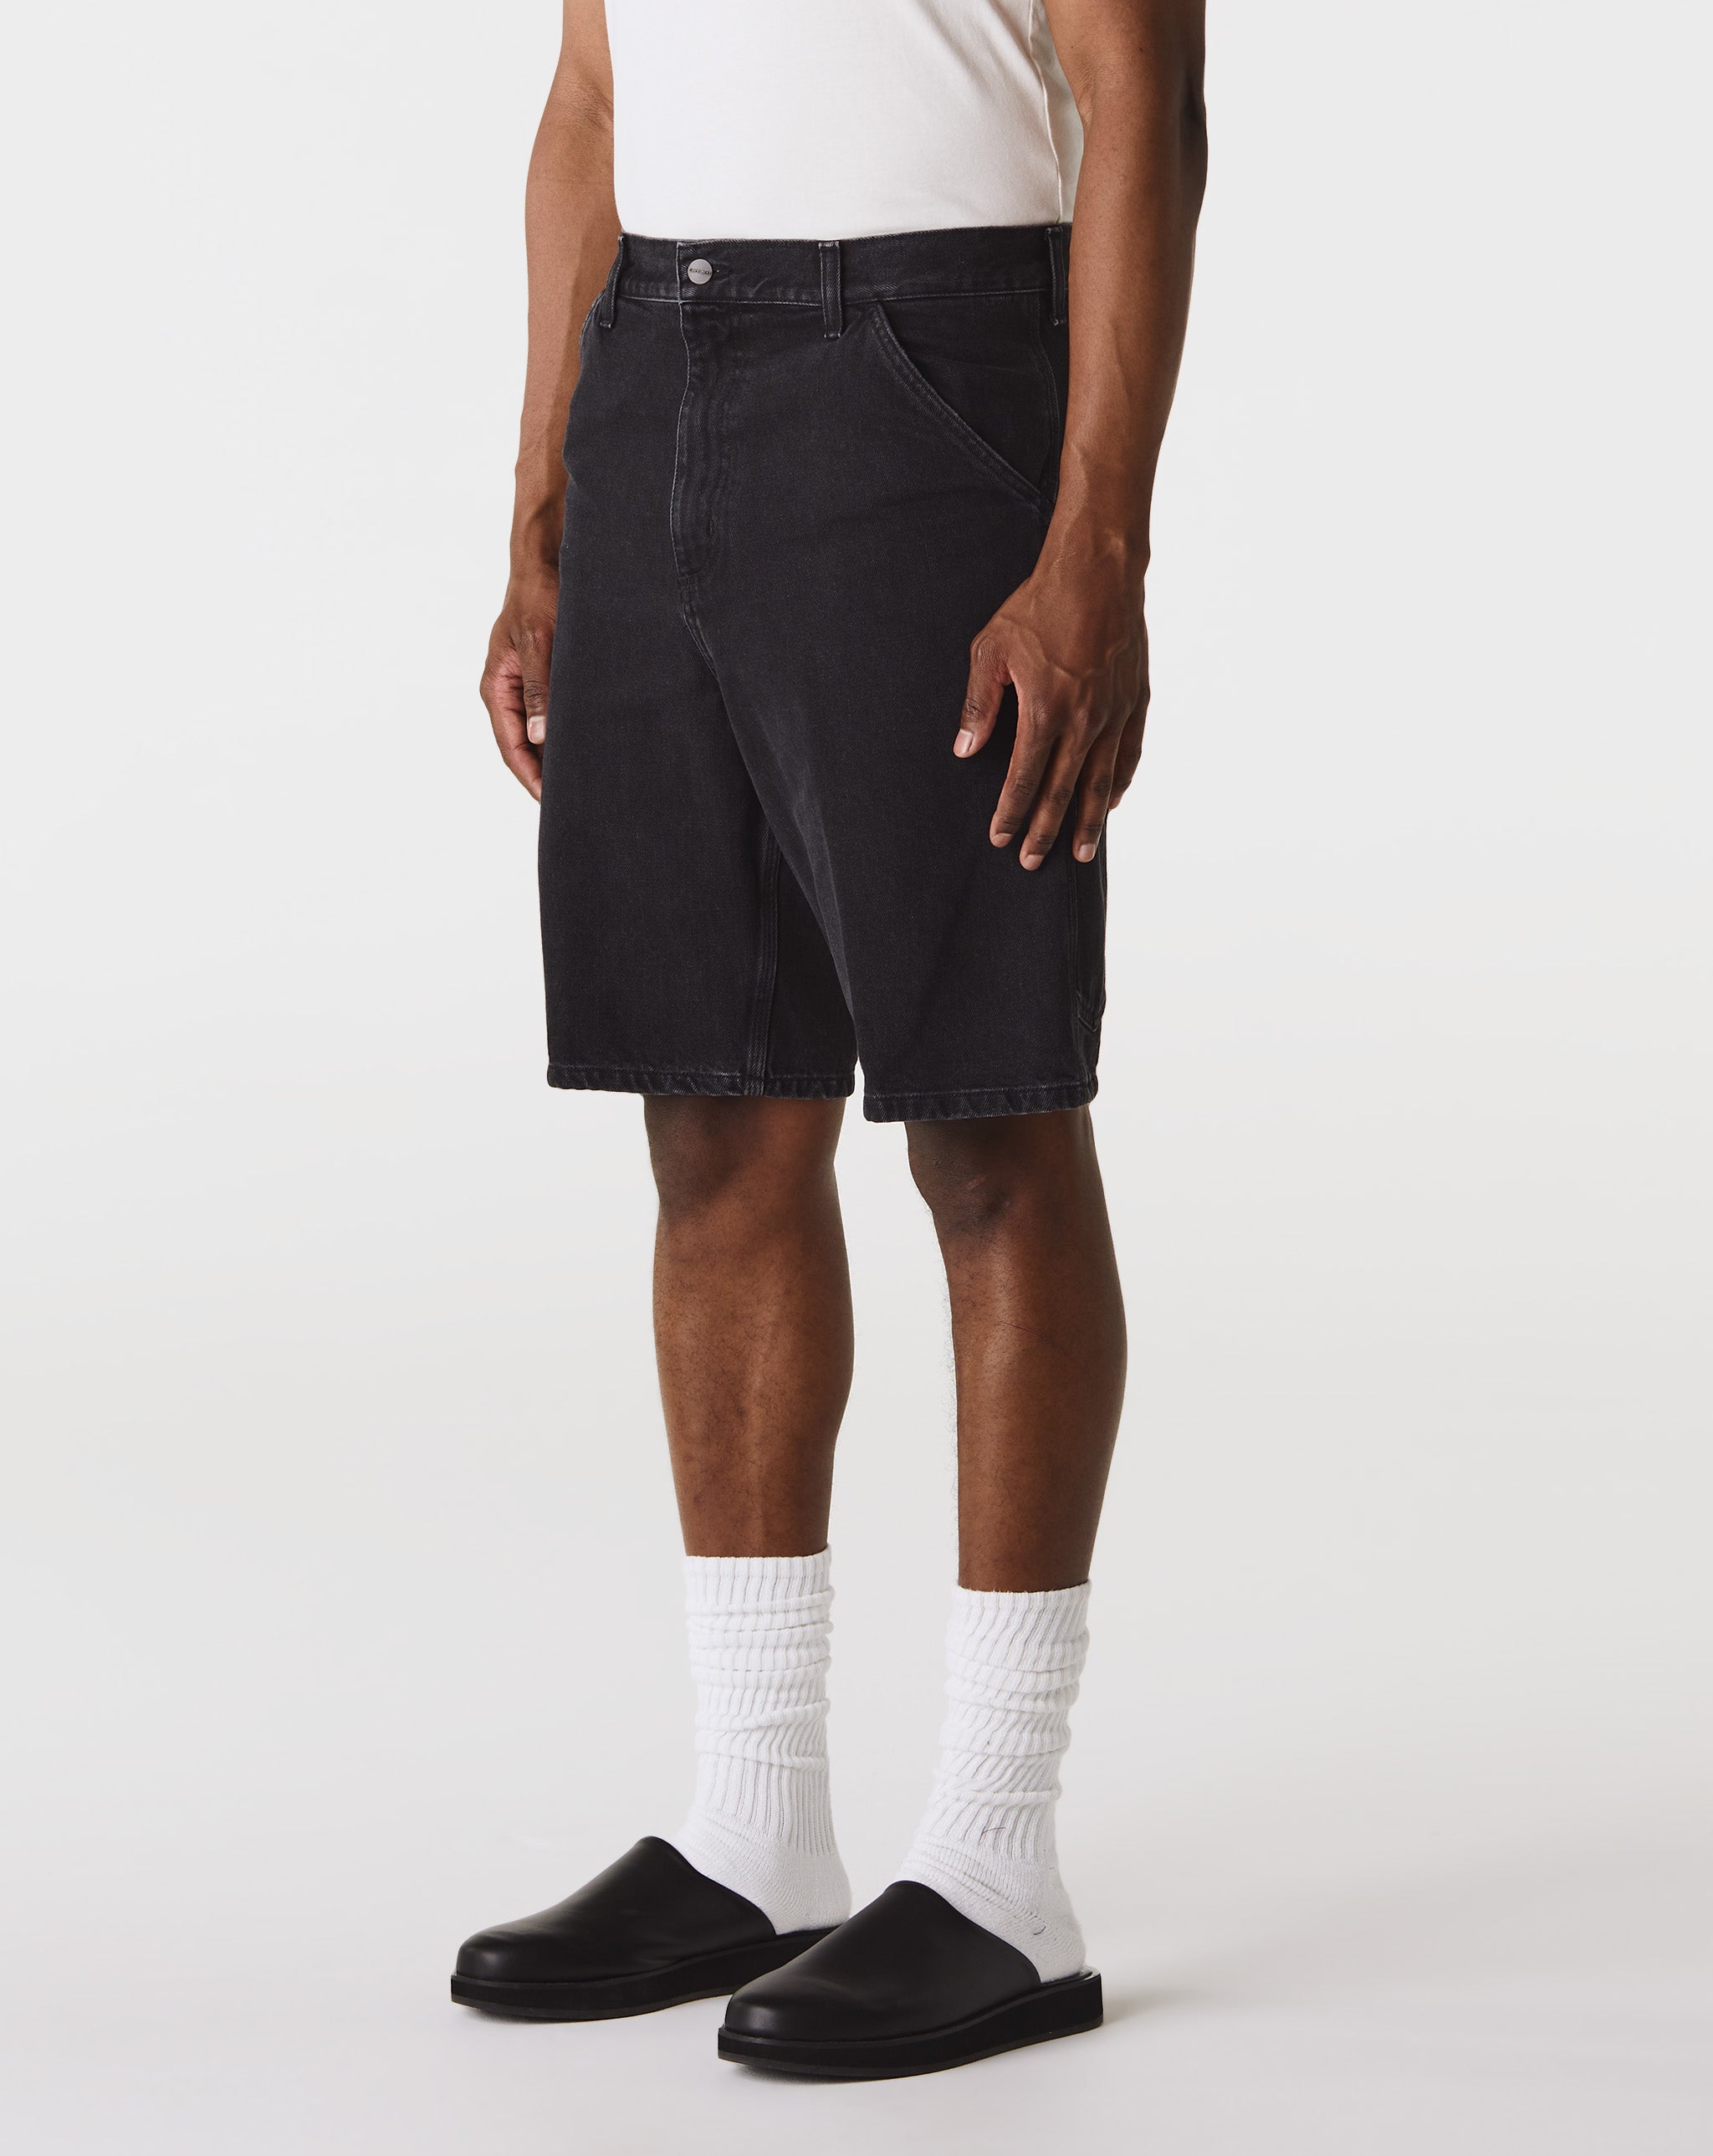 Carhartt WIP Single Knee Shorts  - Cheap Urlfreeze Jordan outlet